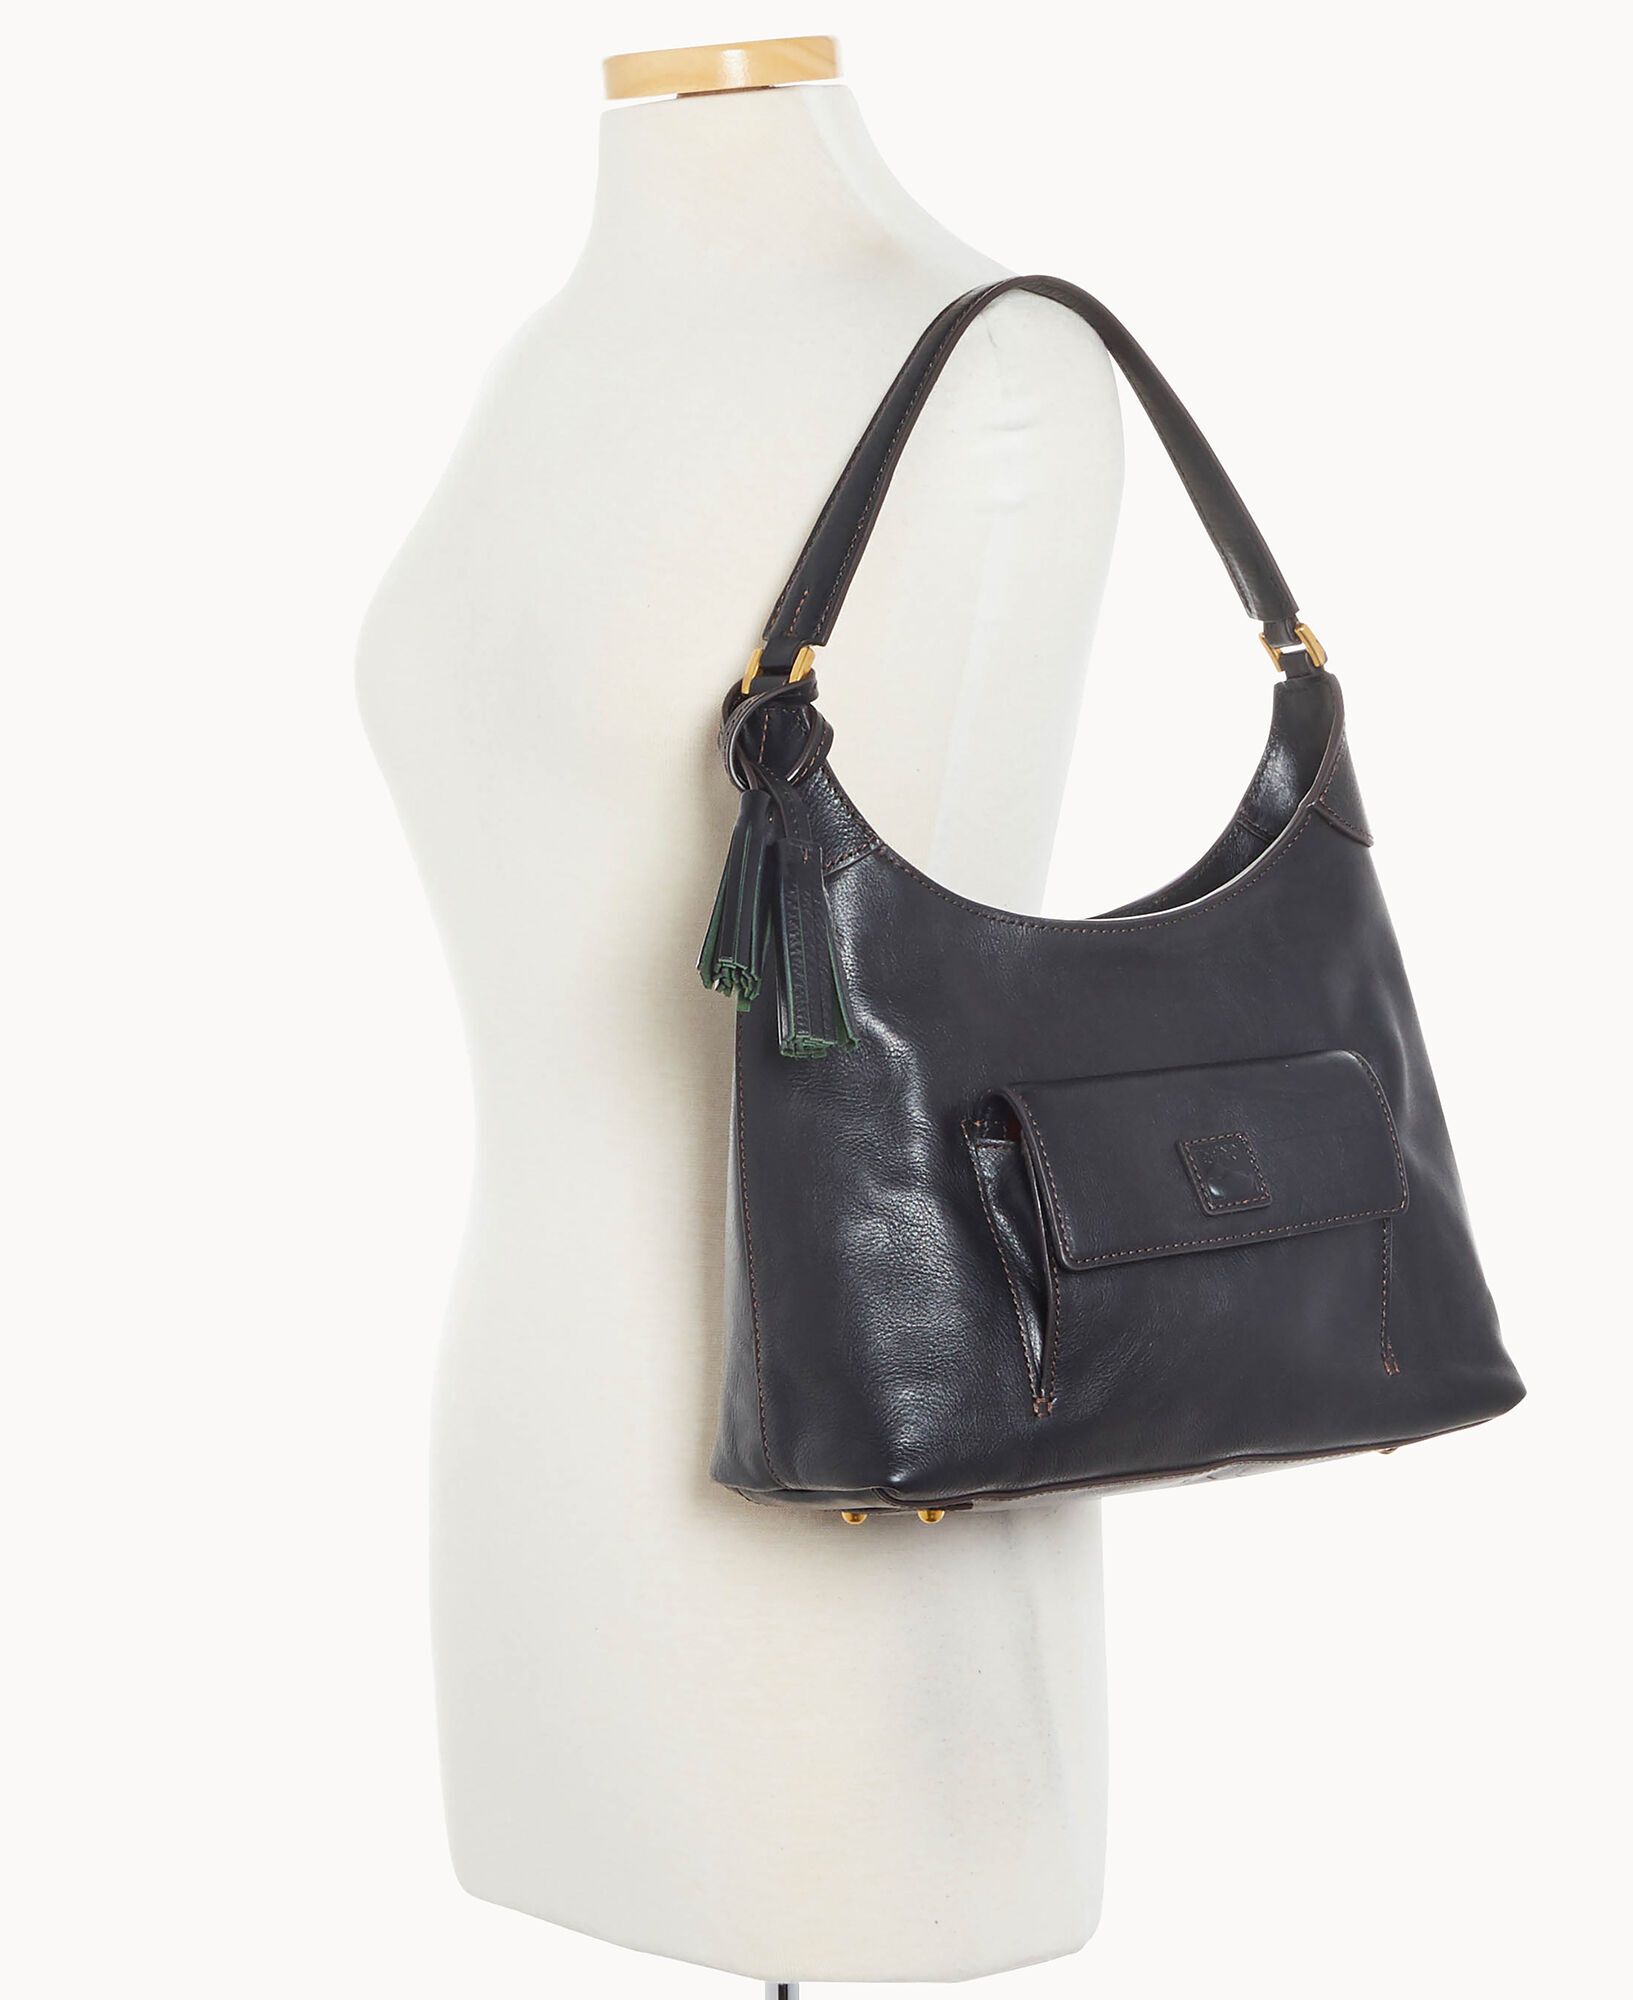 Dooney & Bourke Handbag, Florentine Small Hobo Shoulder Bag - Black